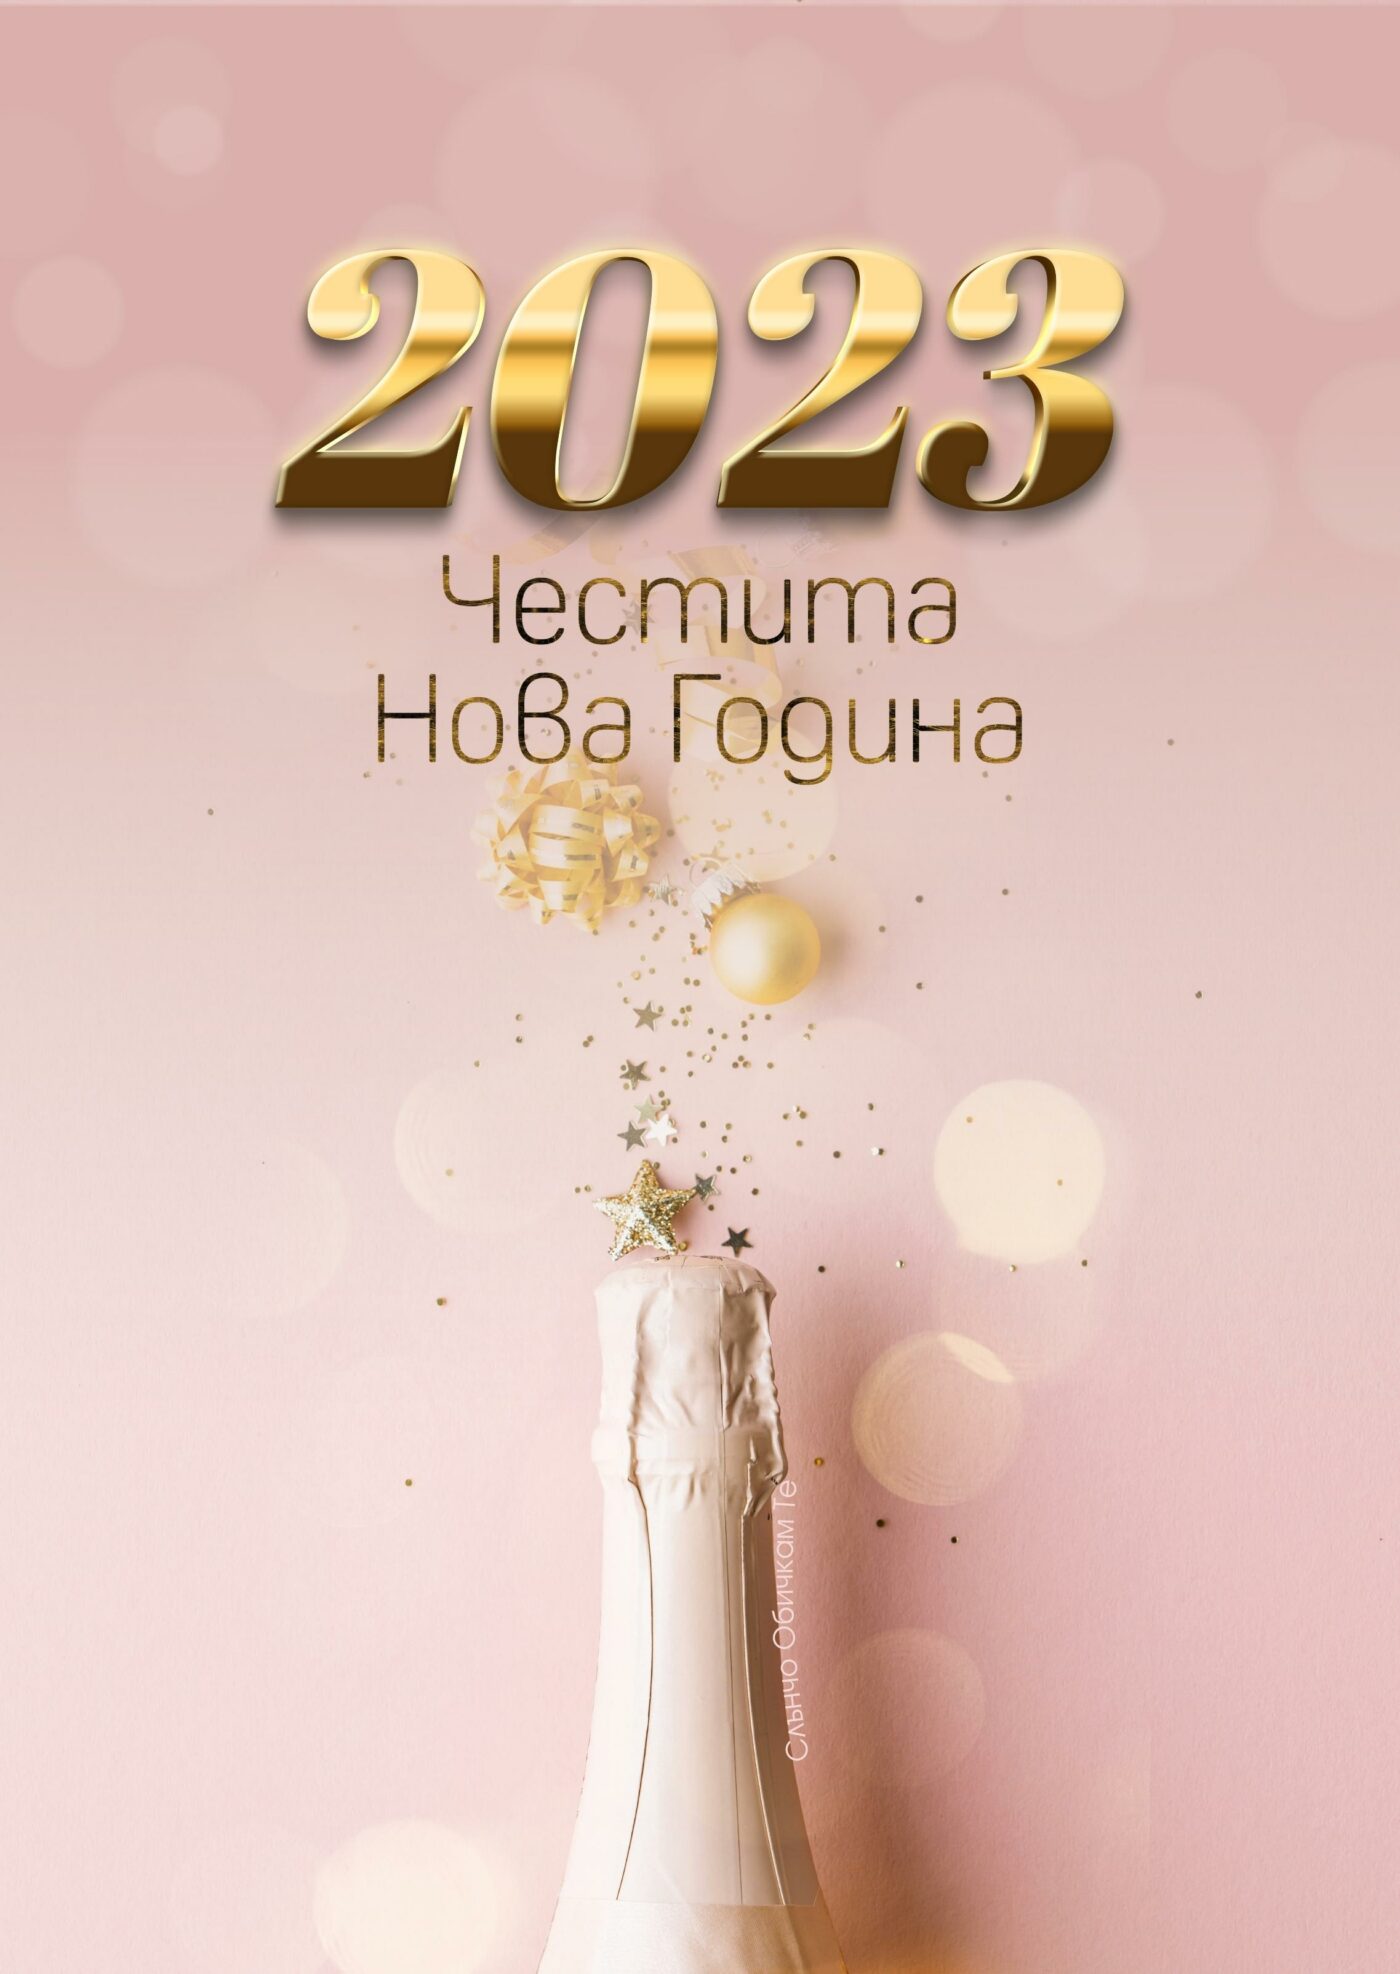 Честита Нова година на розов фон, Новогодишни картички, Нова година 2023, честита нова година, картички за нова година 2023, пожелания за нова година, слънчо обичкам те